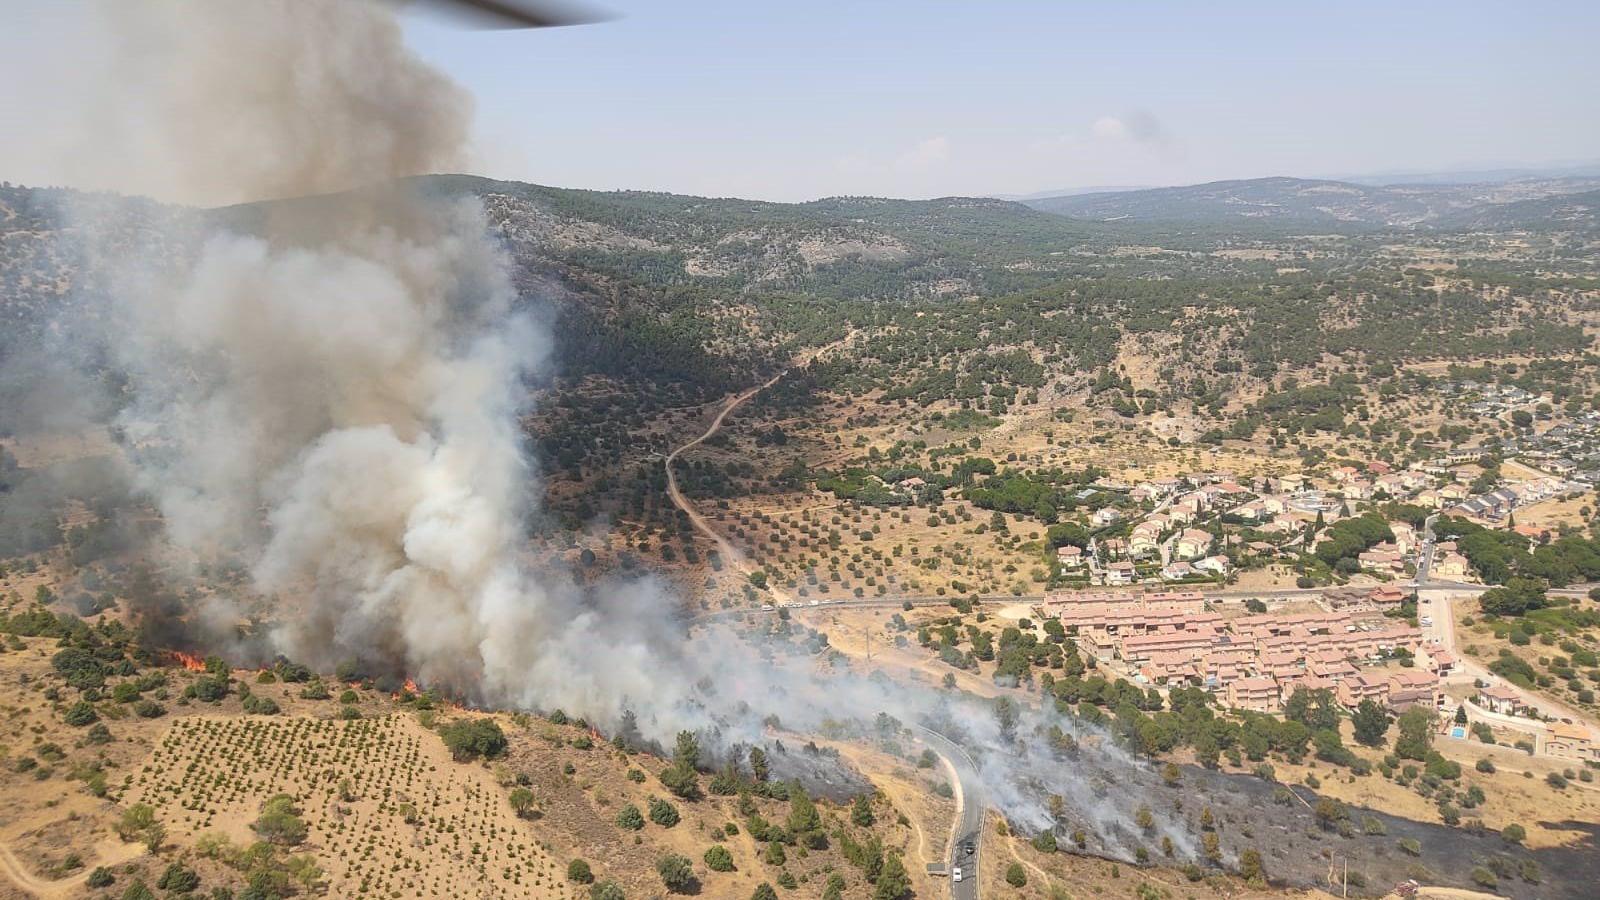  15 medios terrestres de la Comunidad trabajan para controlar y extinguir el fuego forestal de Cebreros